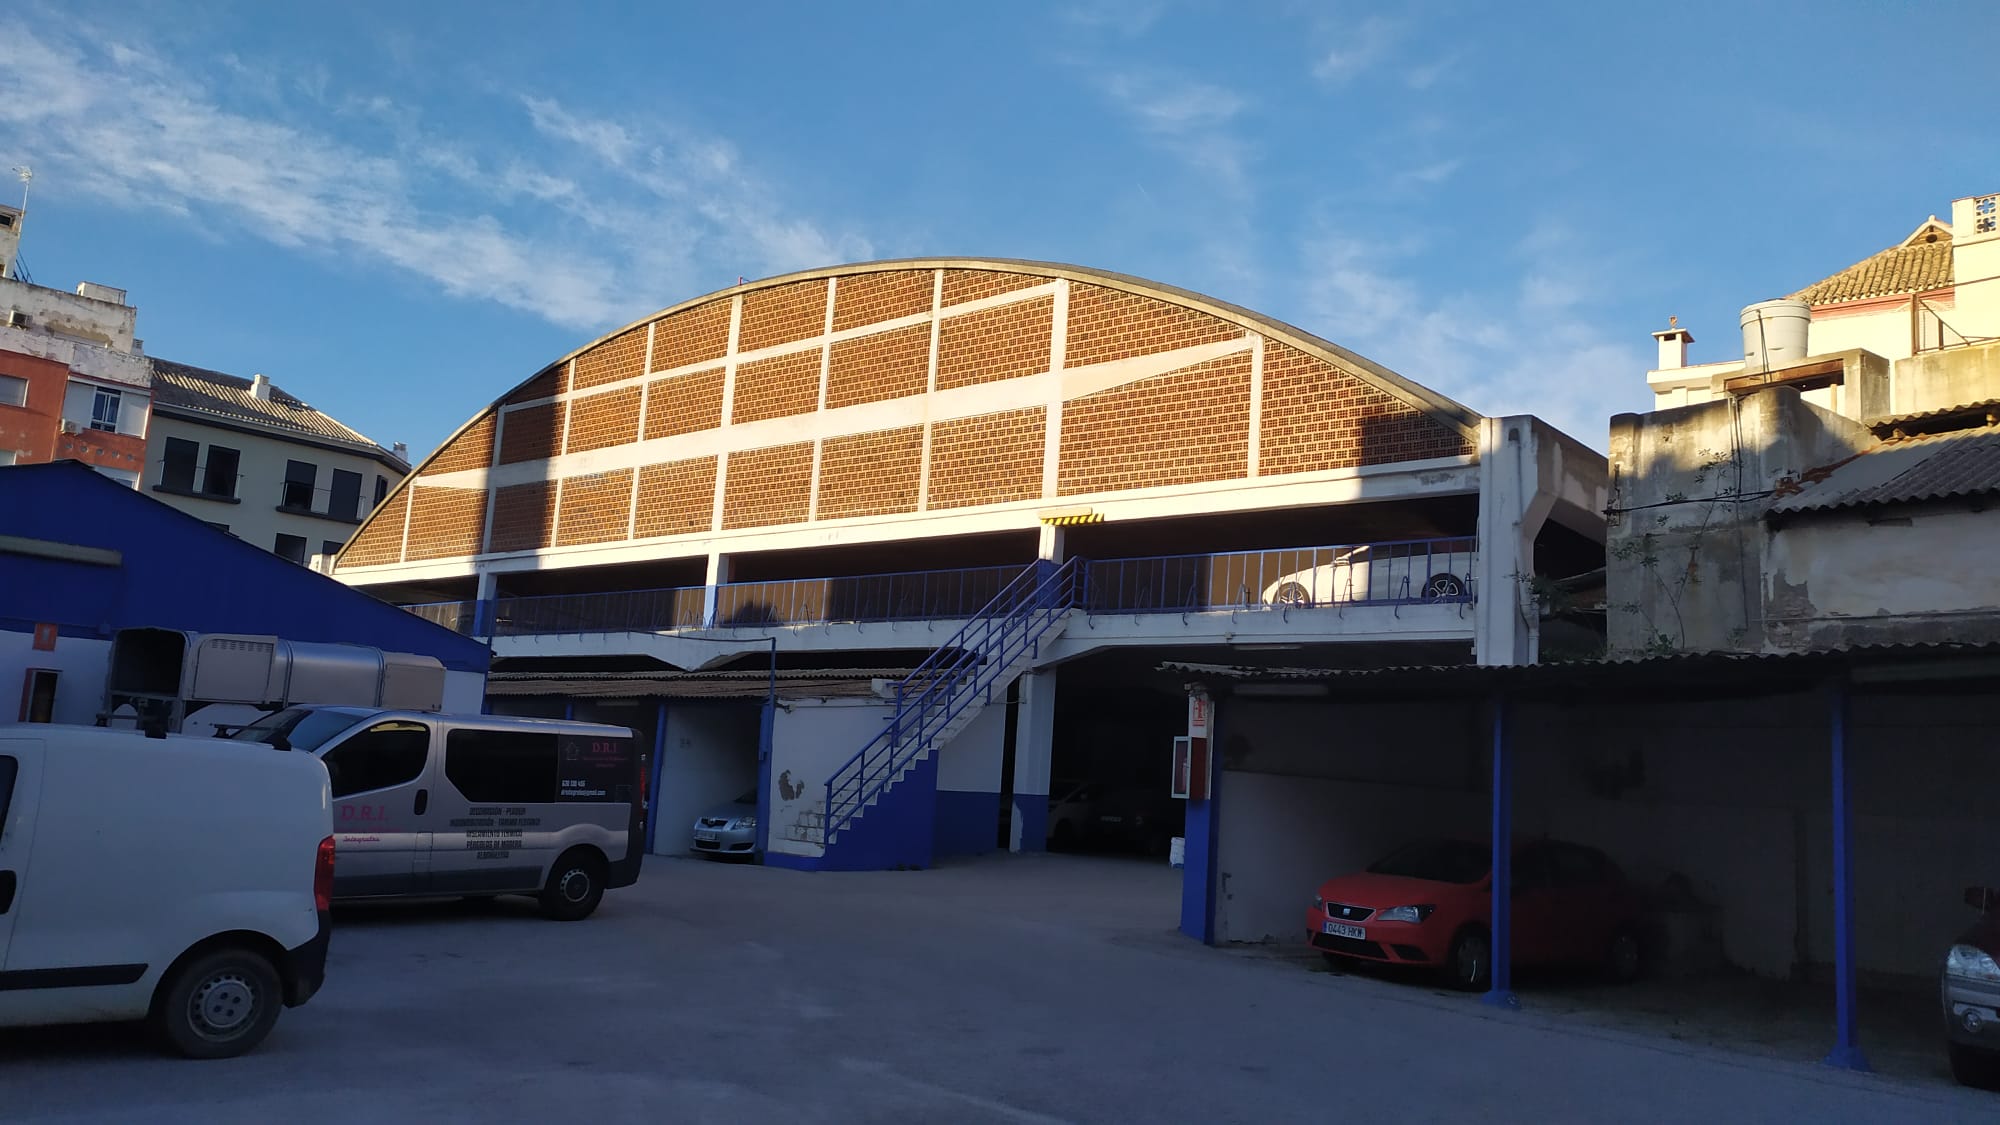 Garaje Las Delicias, edificio con cubierta abovedada, marzo de 2021.